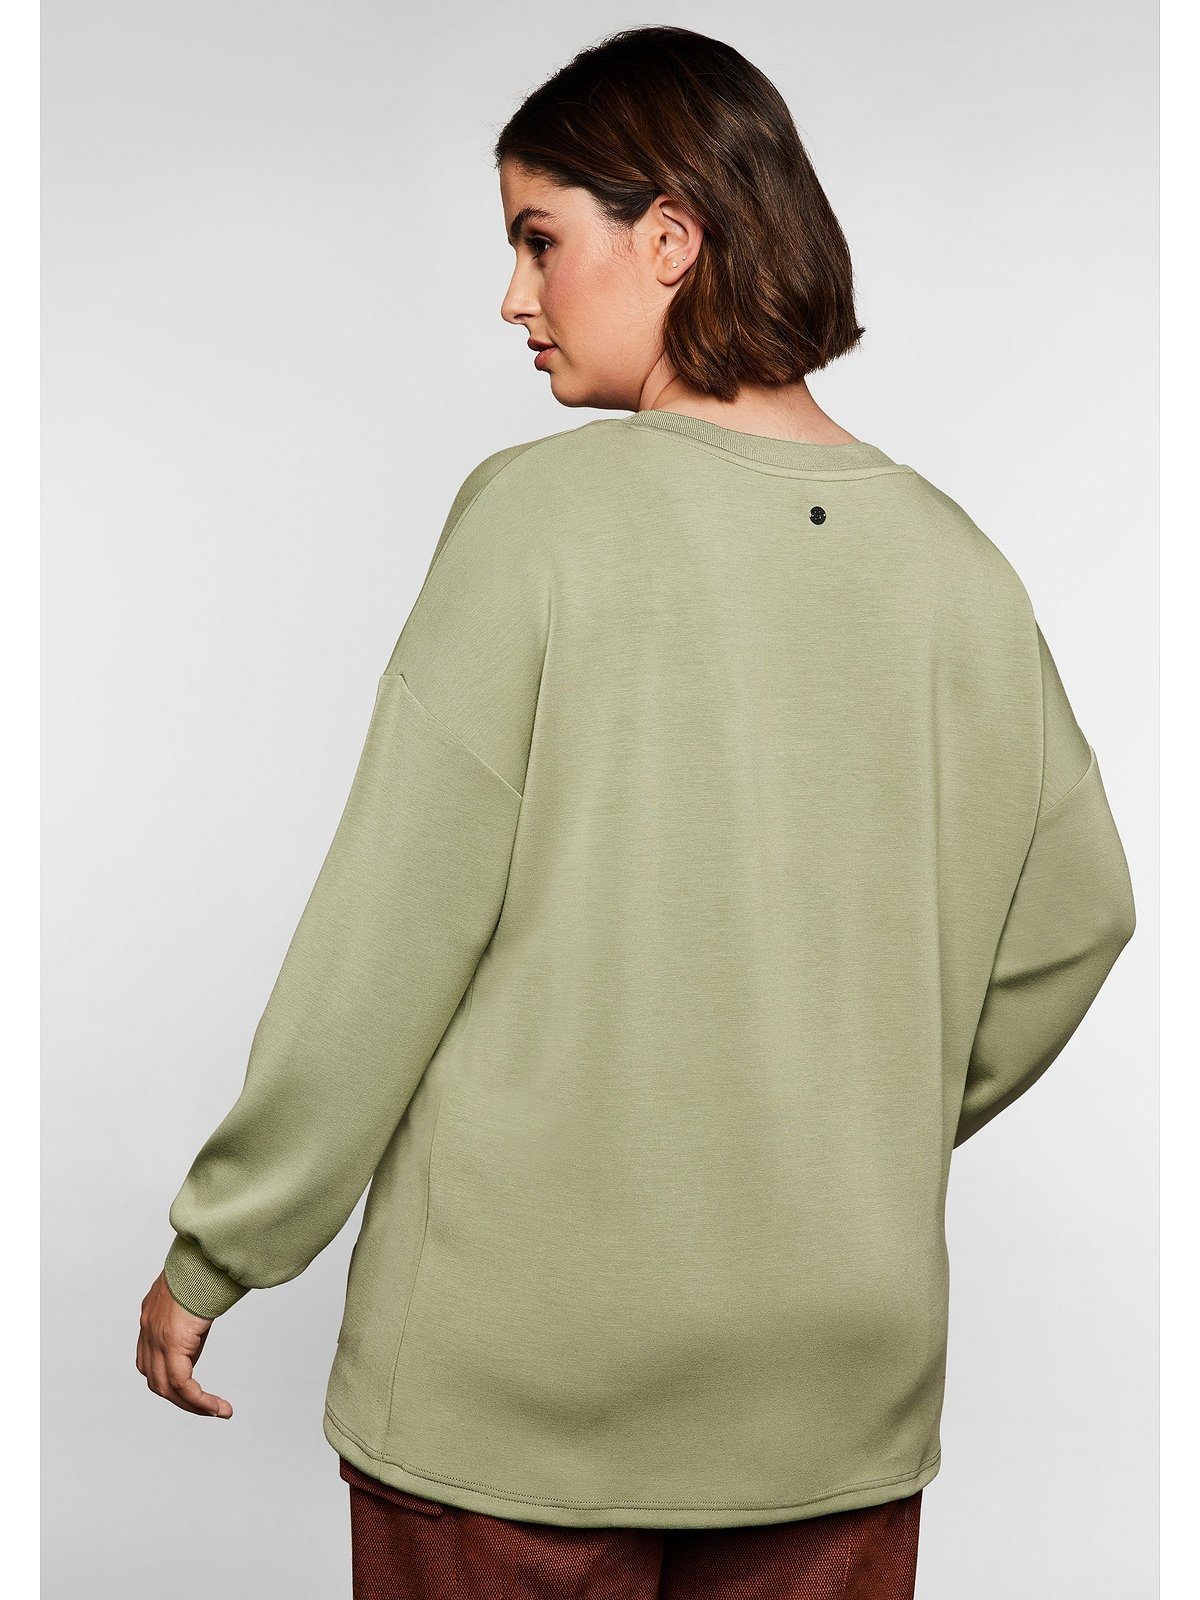 Sheego Langarmshirt Große Größen mit Kängurutasche | Spitzenshirts